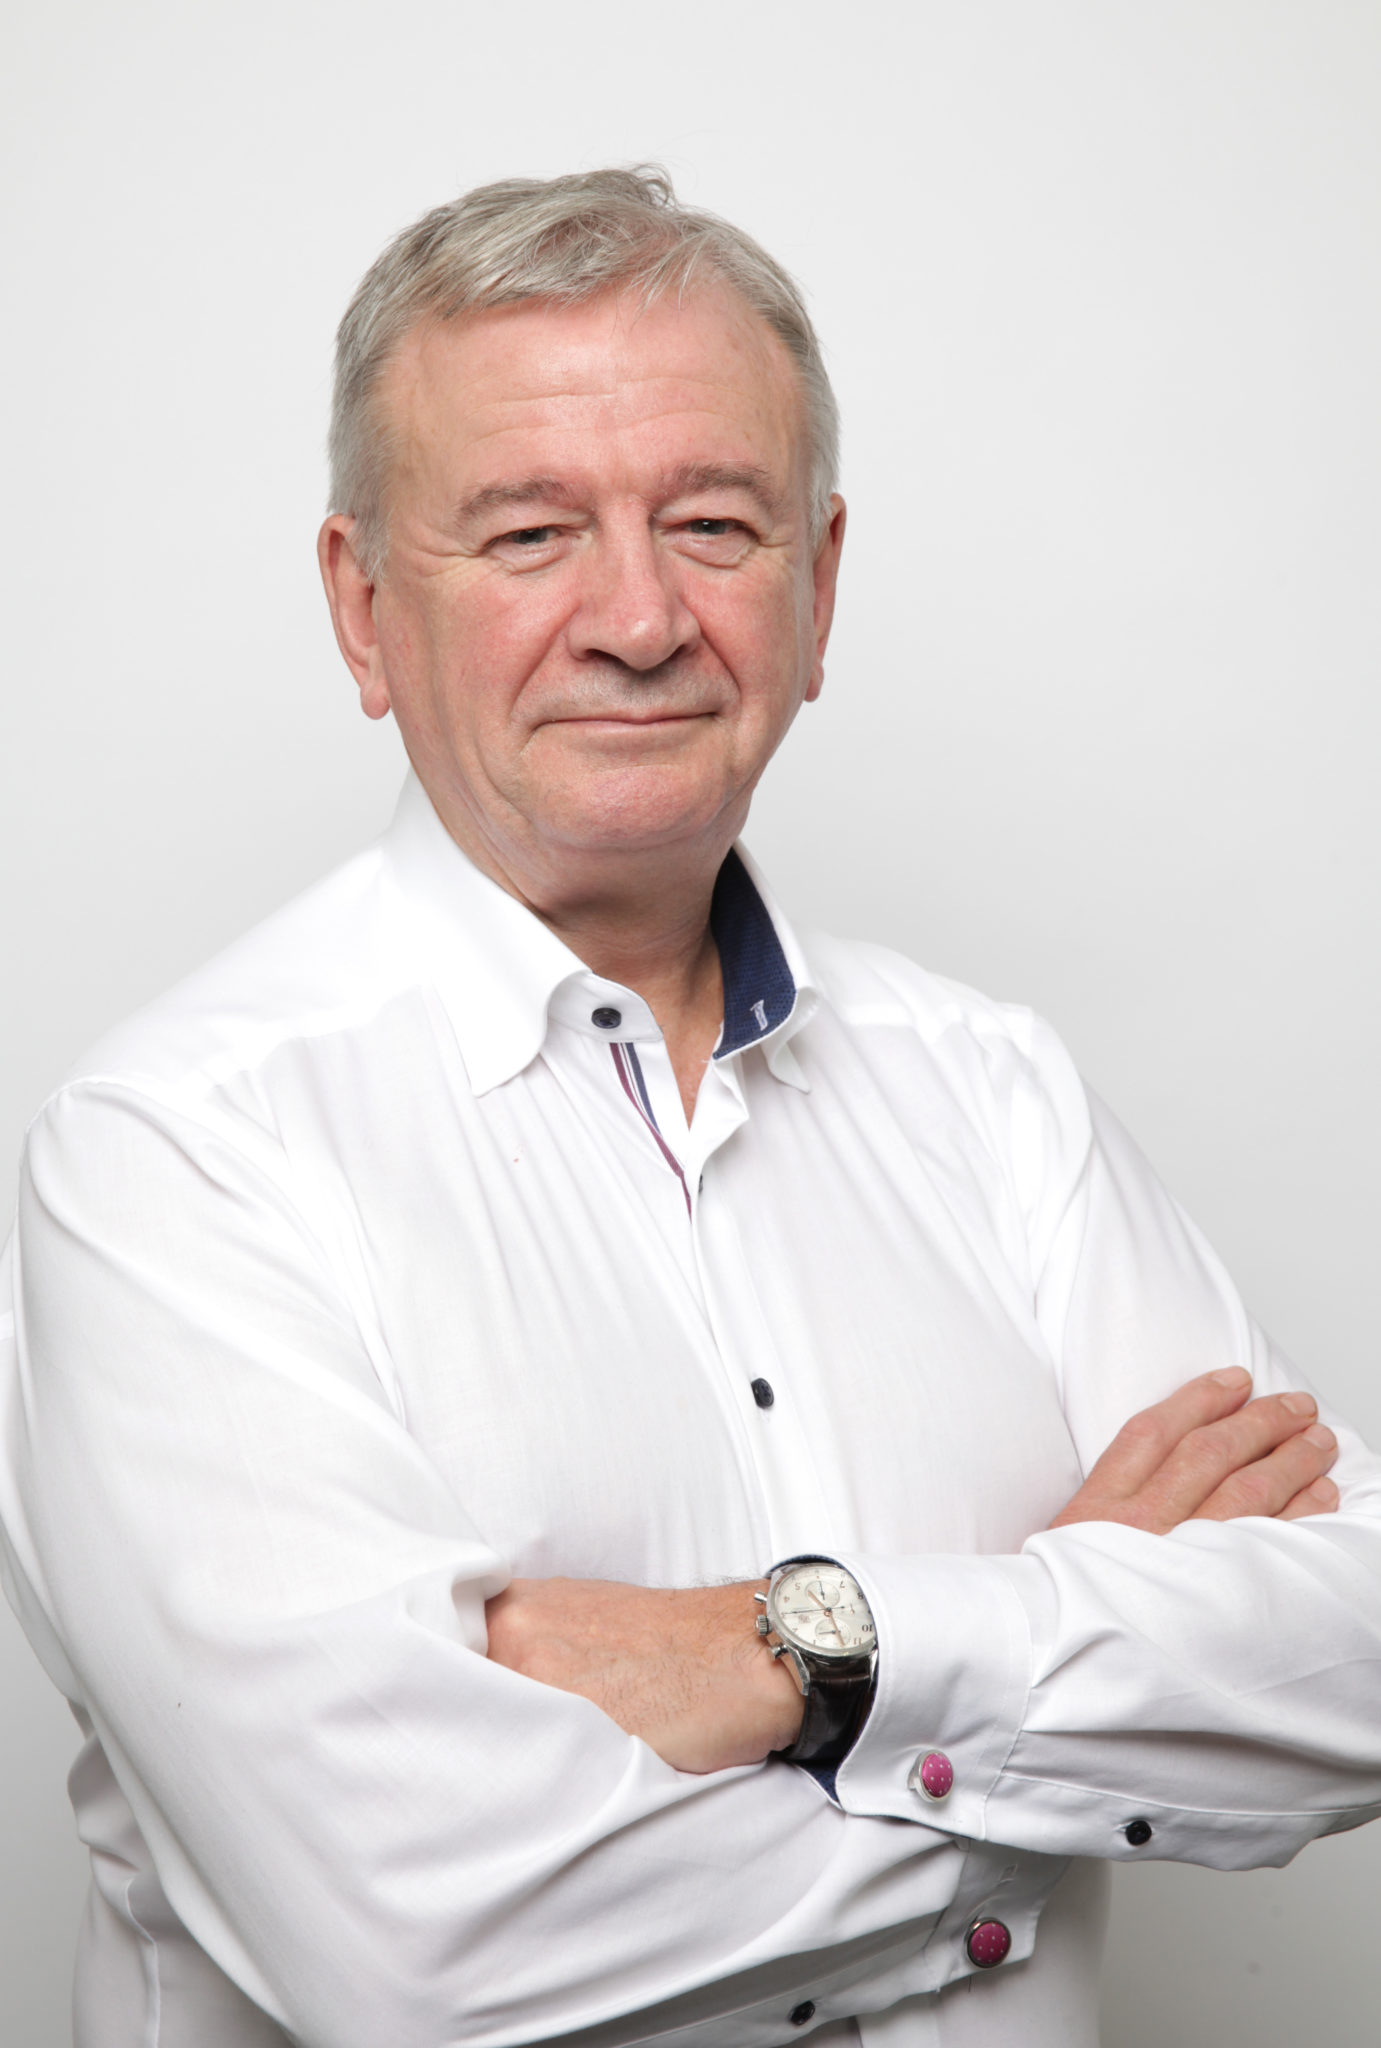 Sir Terry Morgan CBE - Chairman of Crossrail Ltd